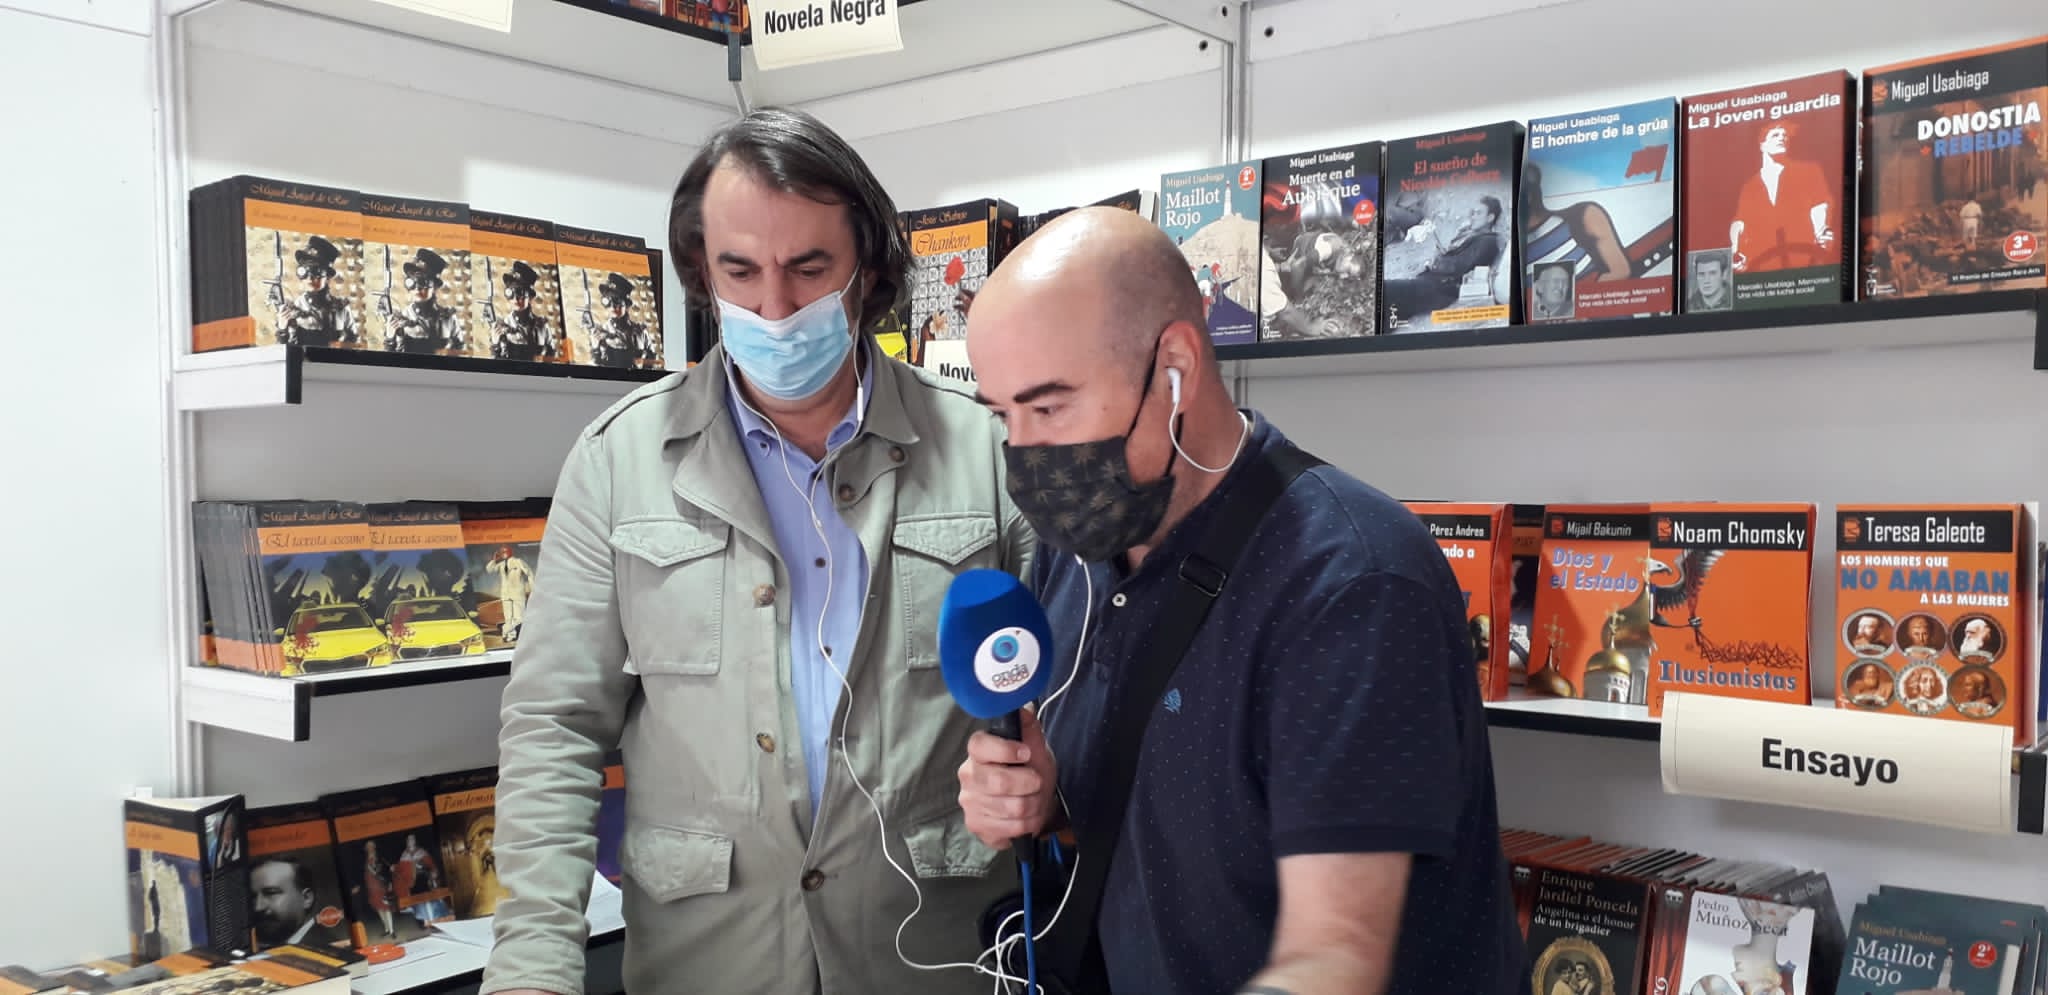 Miguel Ã�ngel de Rus entrevistado en Onda vasca durante la Feria del Libro de San SebastiÃ¡n